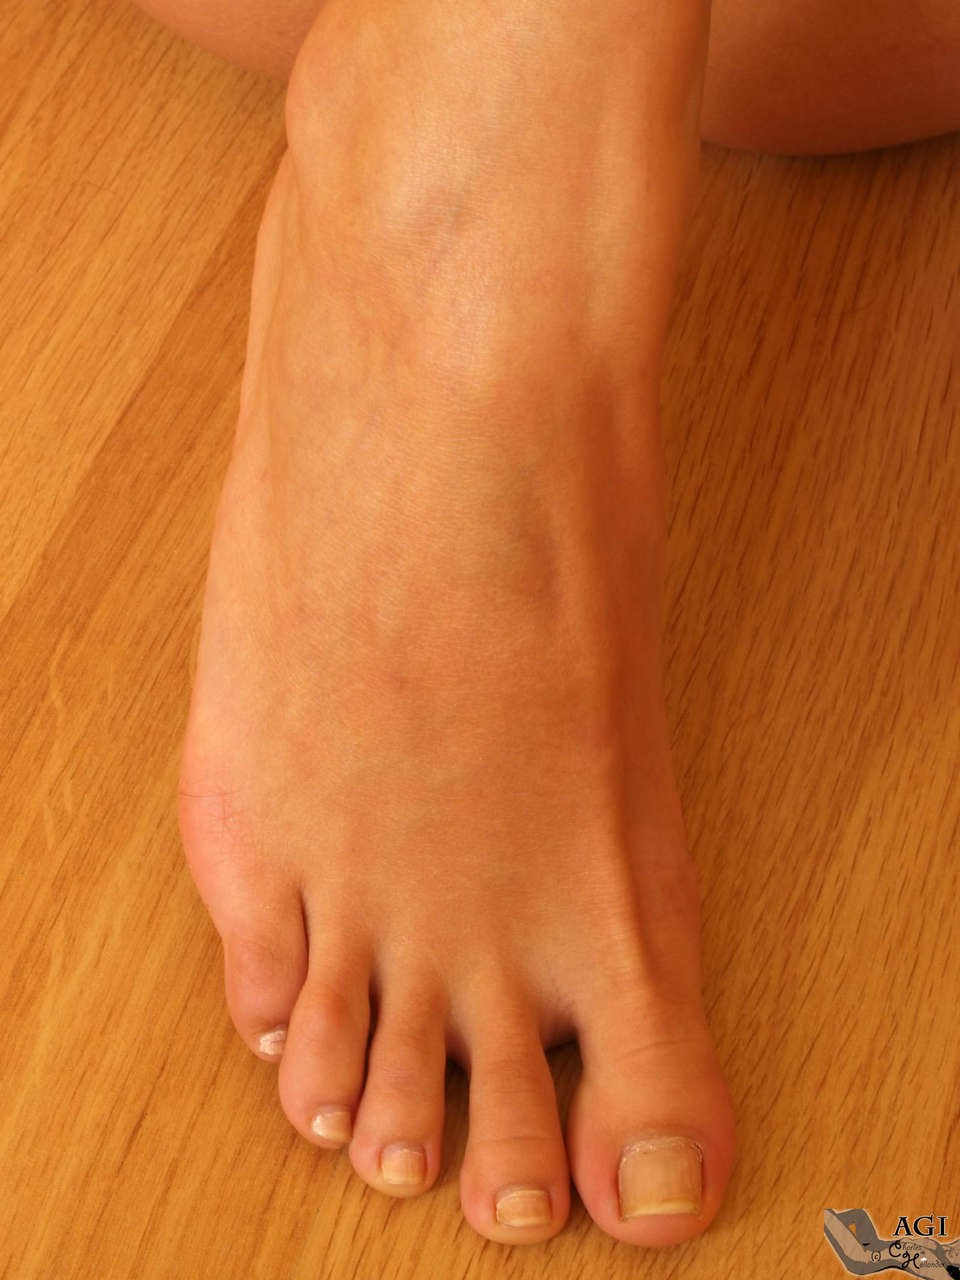 Agi Feet